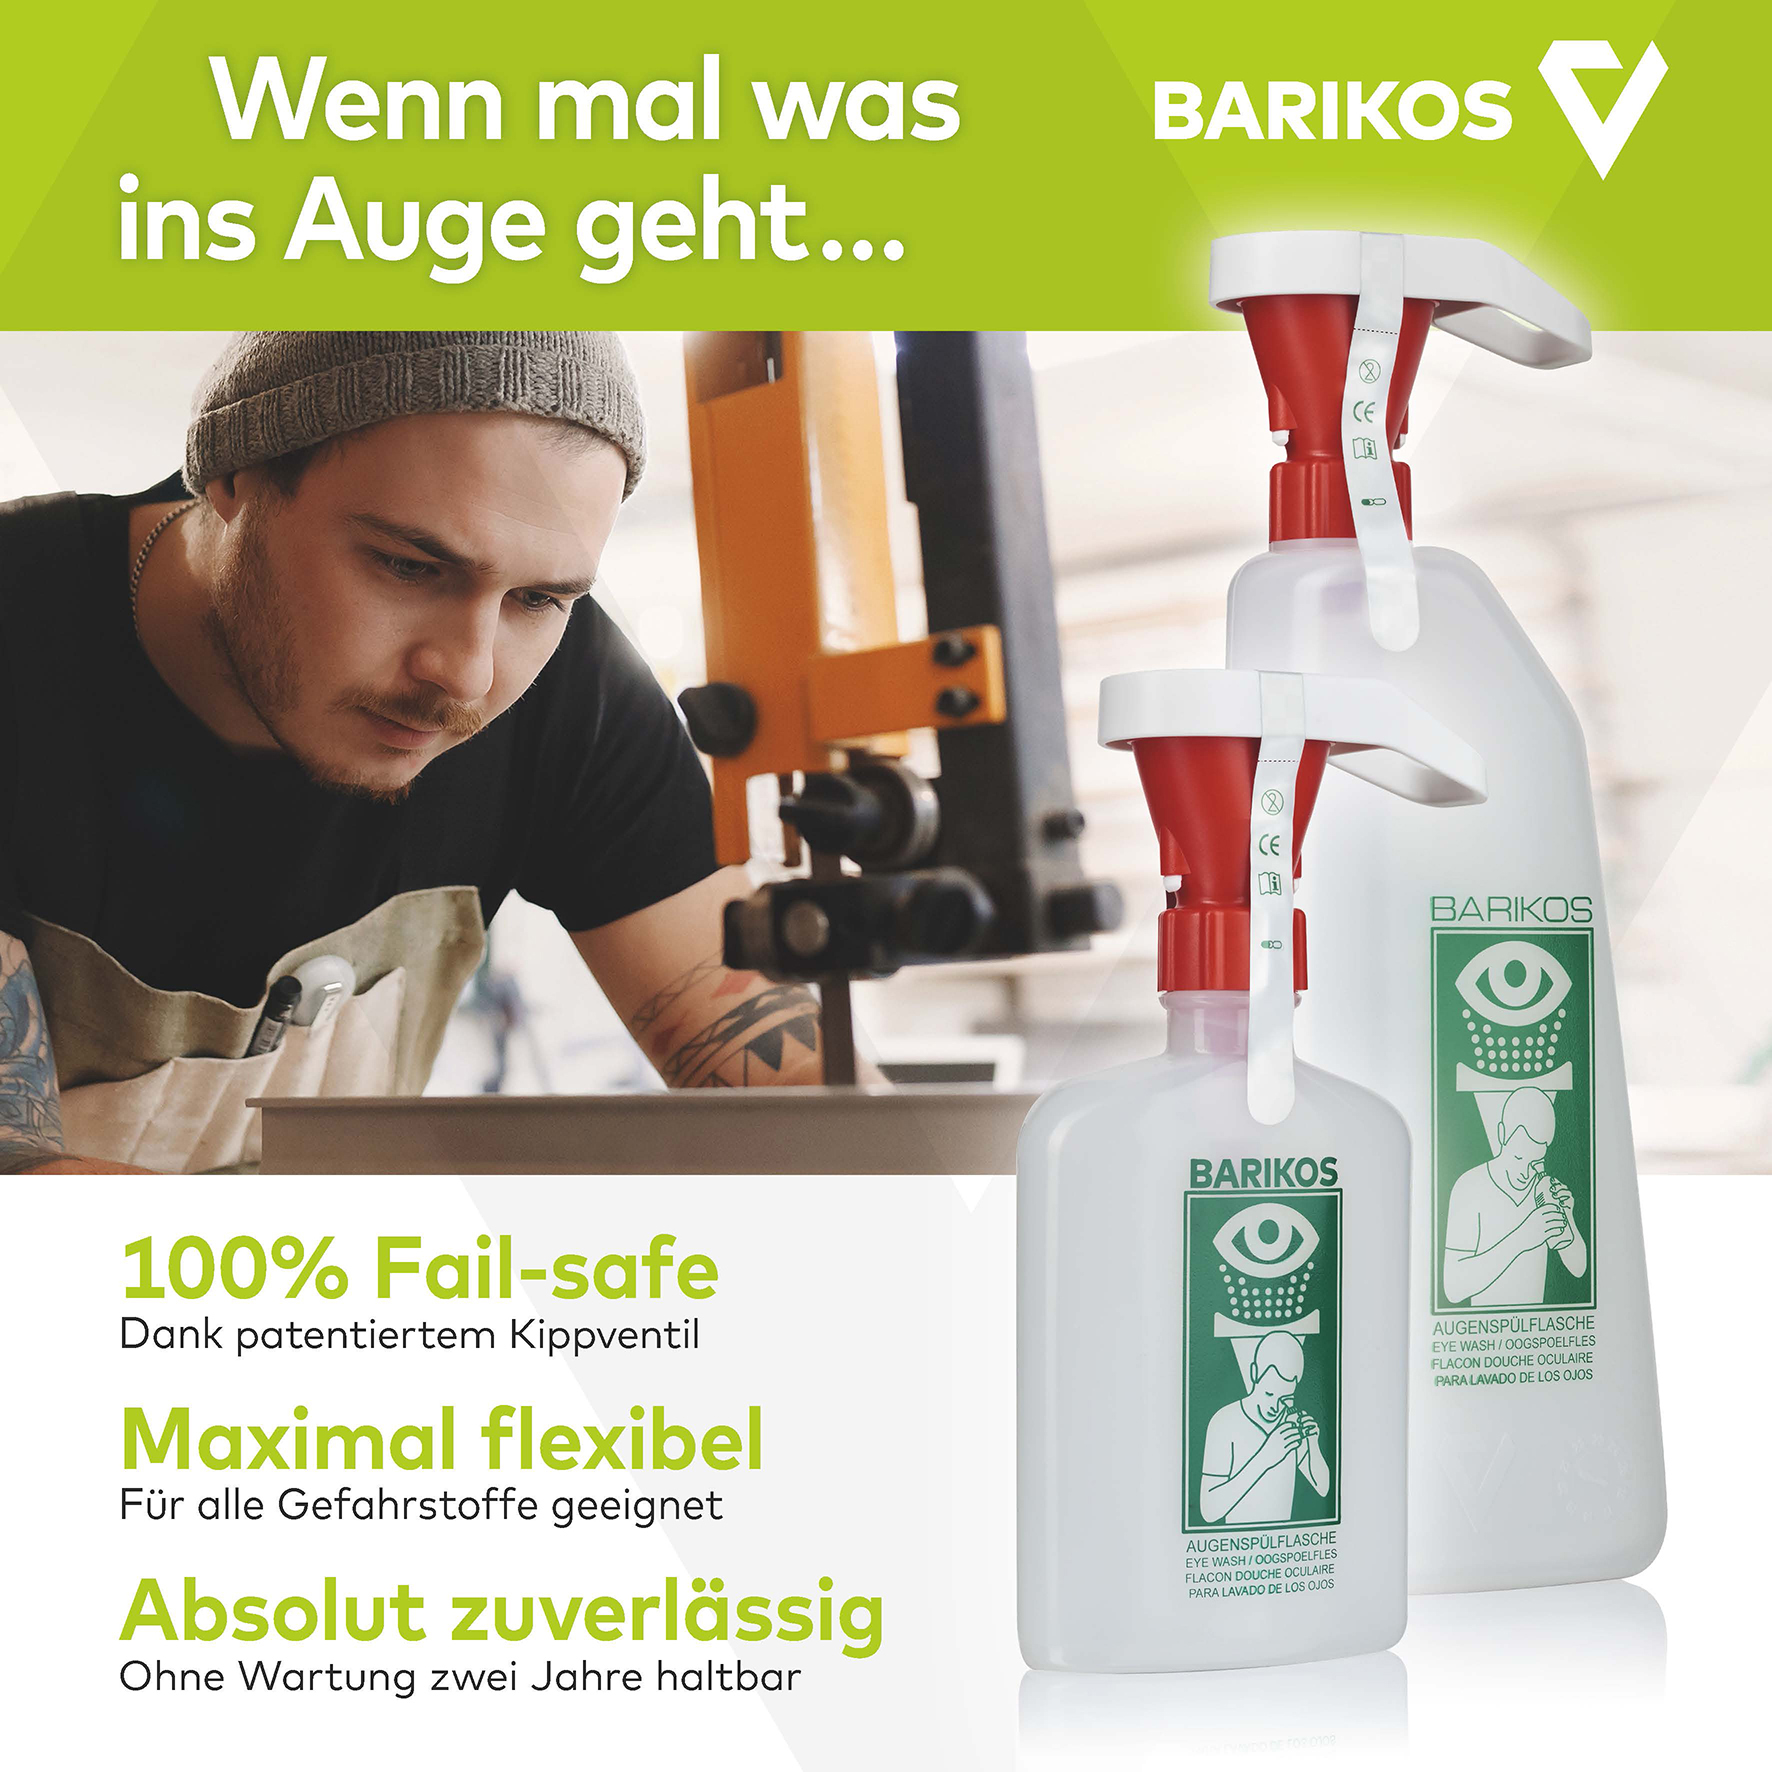 BARIKOS-Set: Wandbehälter inkl. 2 Augenspülflaschen 620 ml